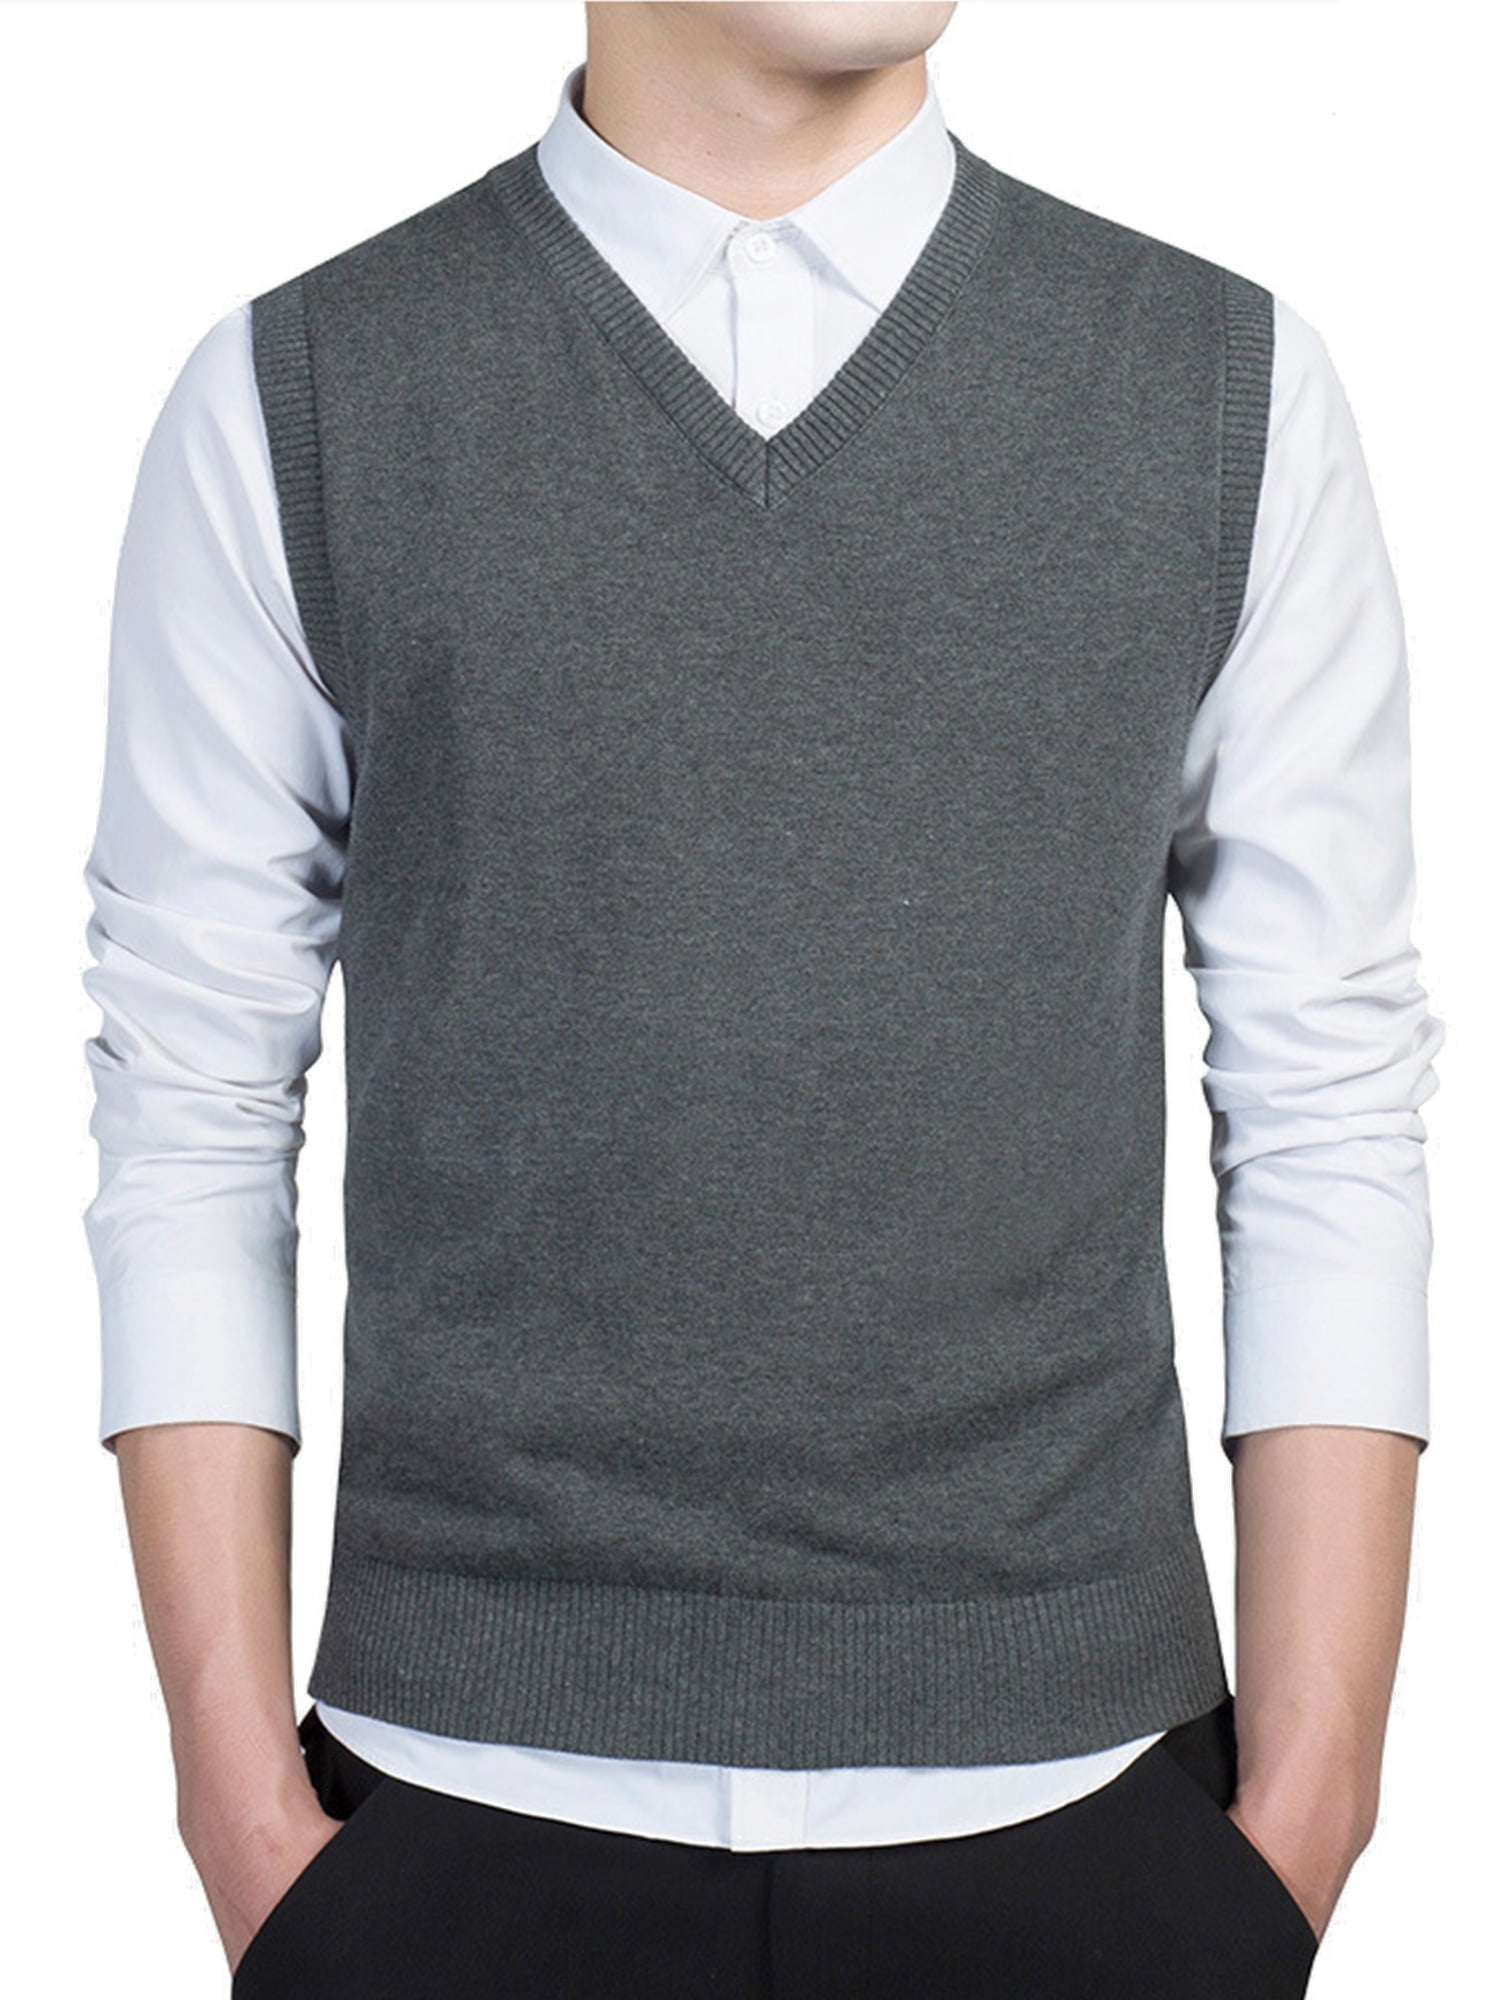 Capreze Mens Vest Sweater V Neck Jumper Tops Solid Color Knitted ...